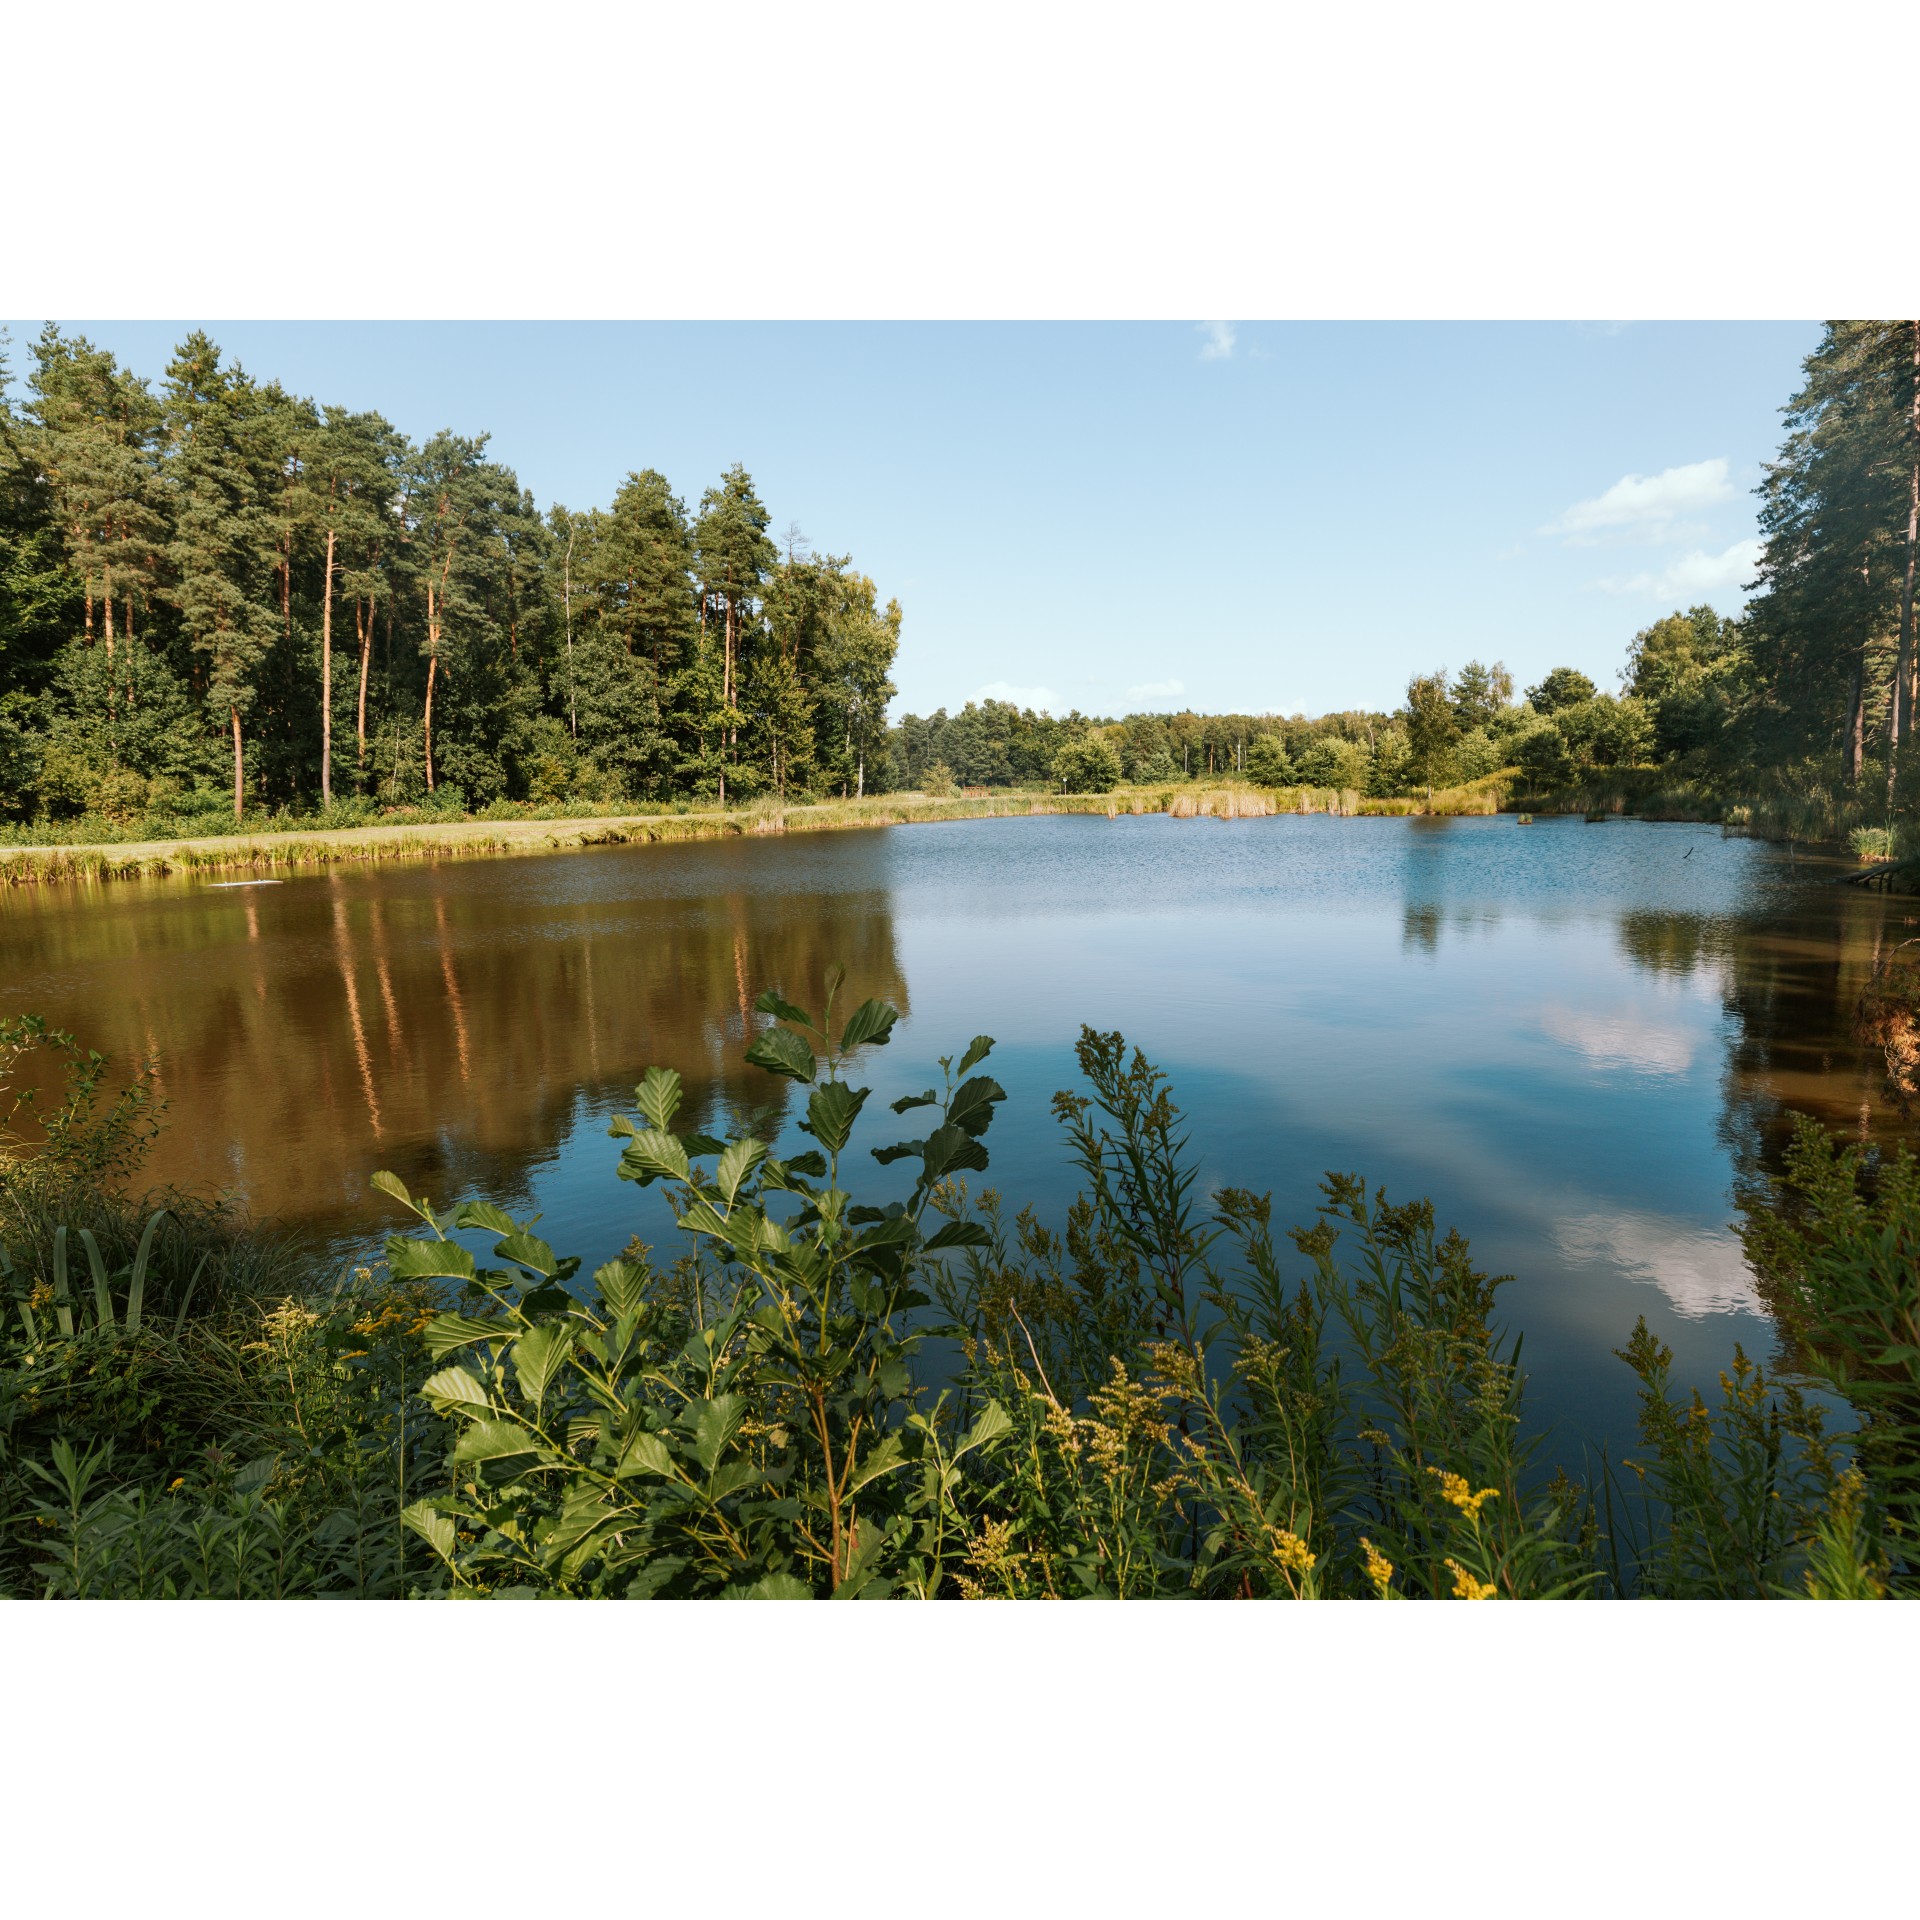 Forest ponds in Czerniawka